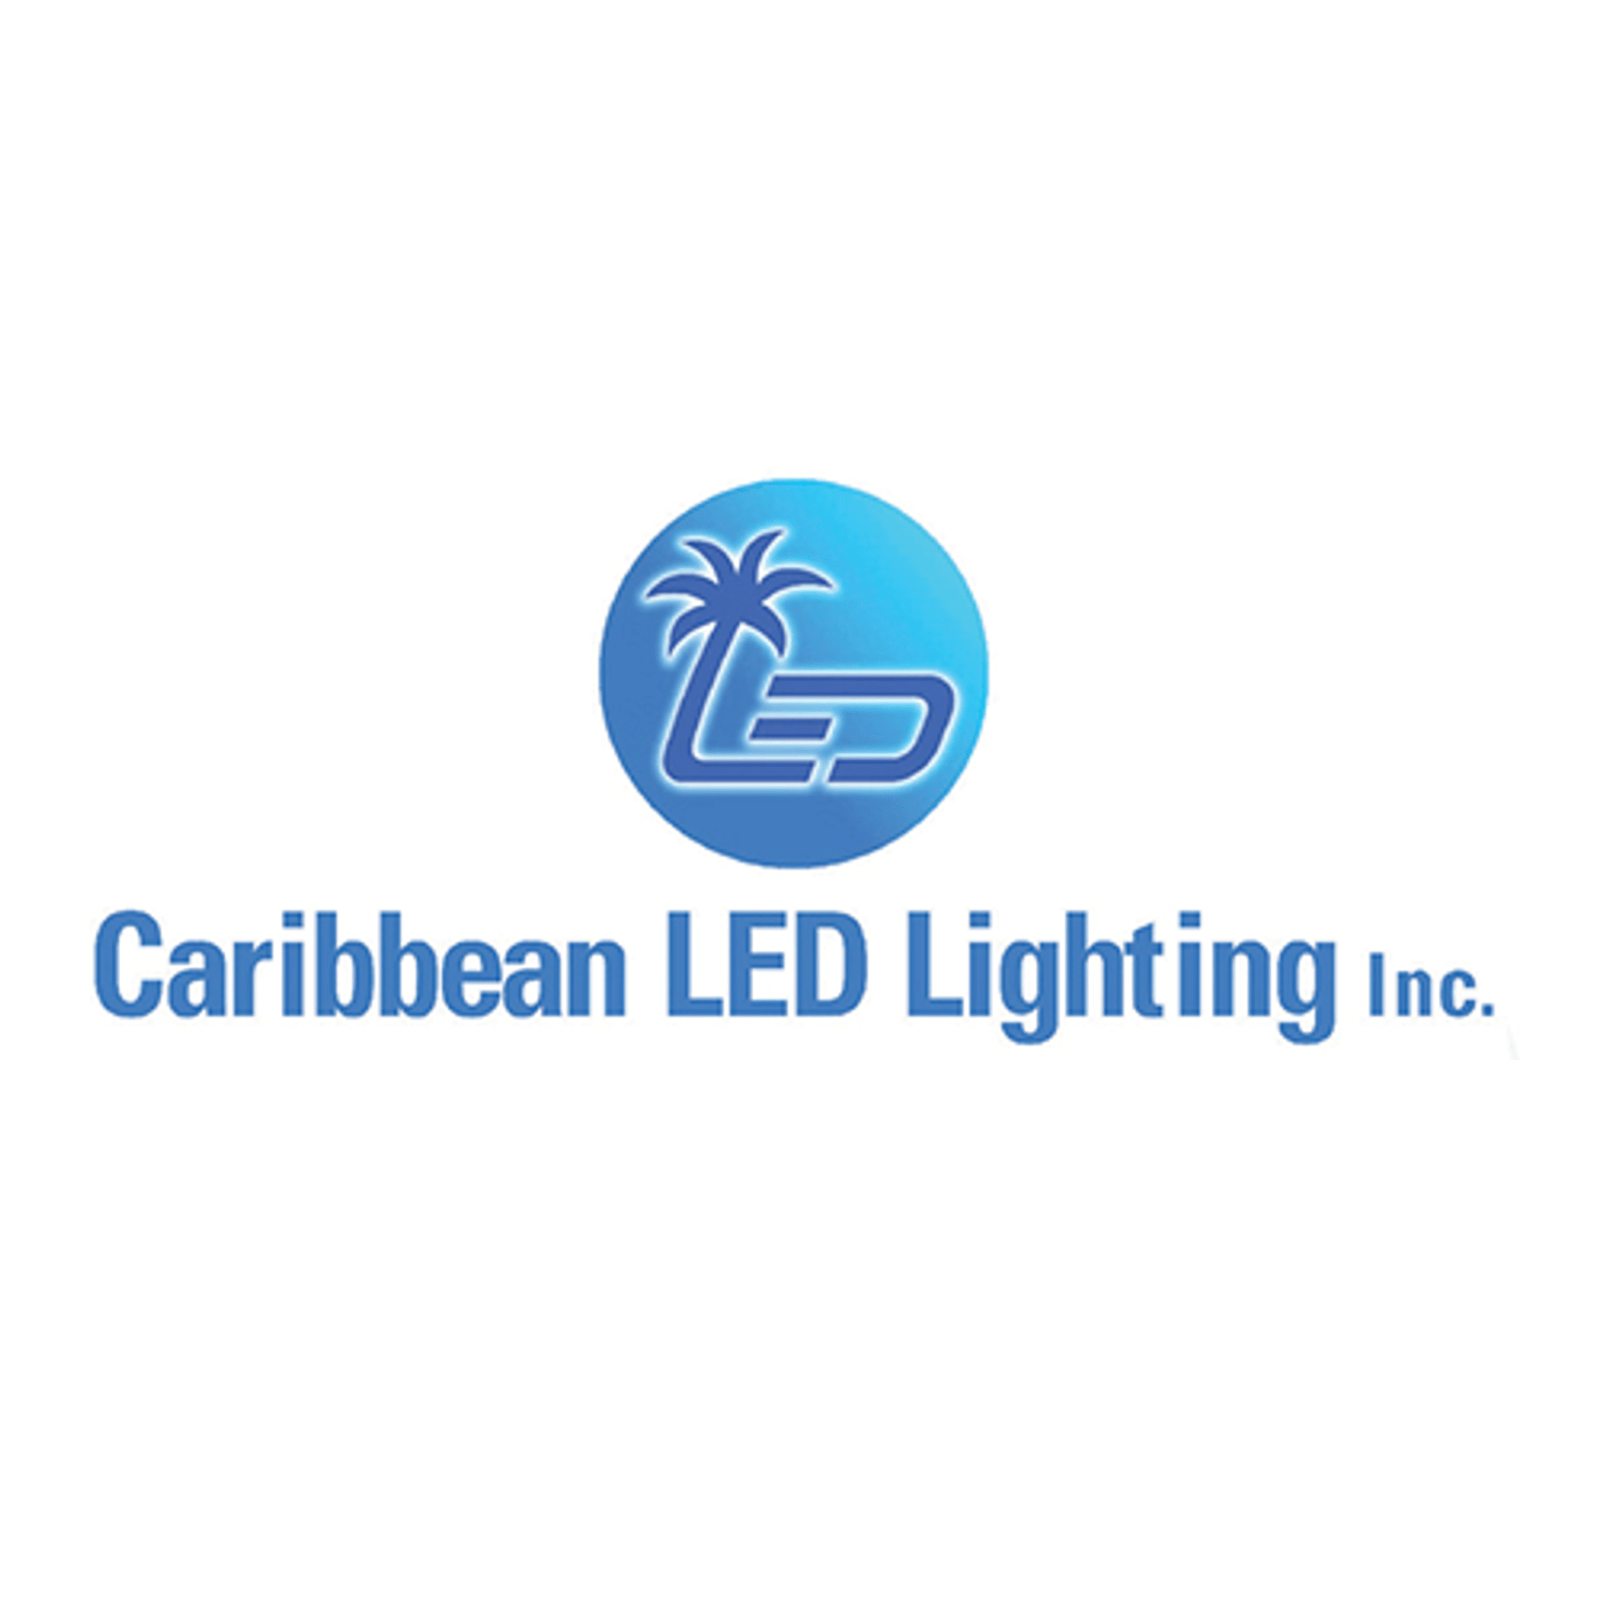 Caribbean LED lighting